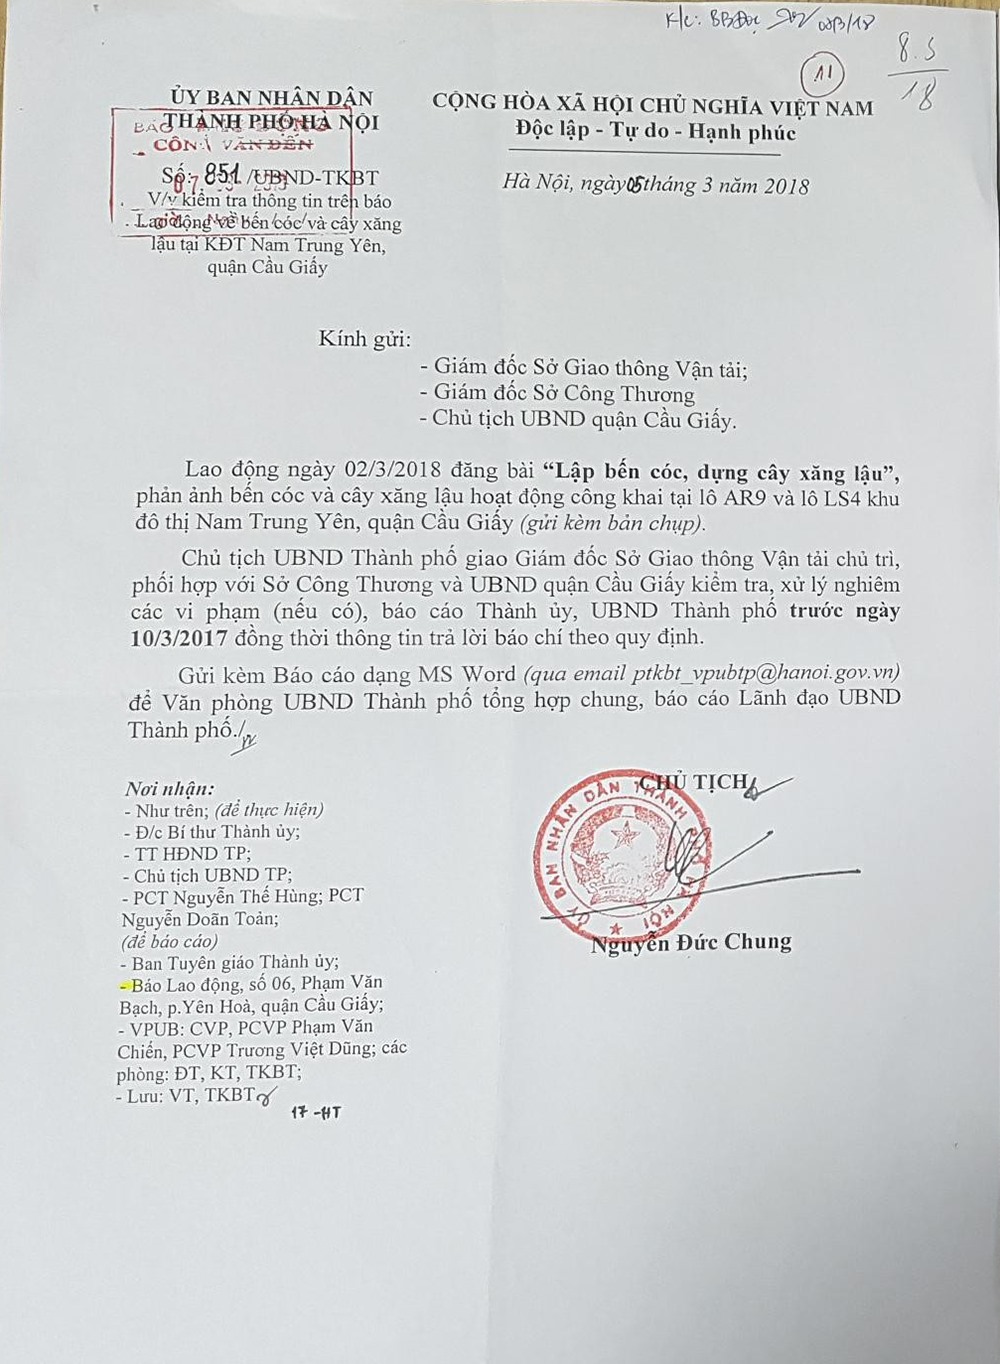 Văn bản chỉ đạo của Chủ tịch UBND thành phố Hà Nội về vụ cây xăng (dầu) trái phép.